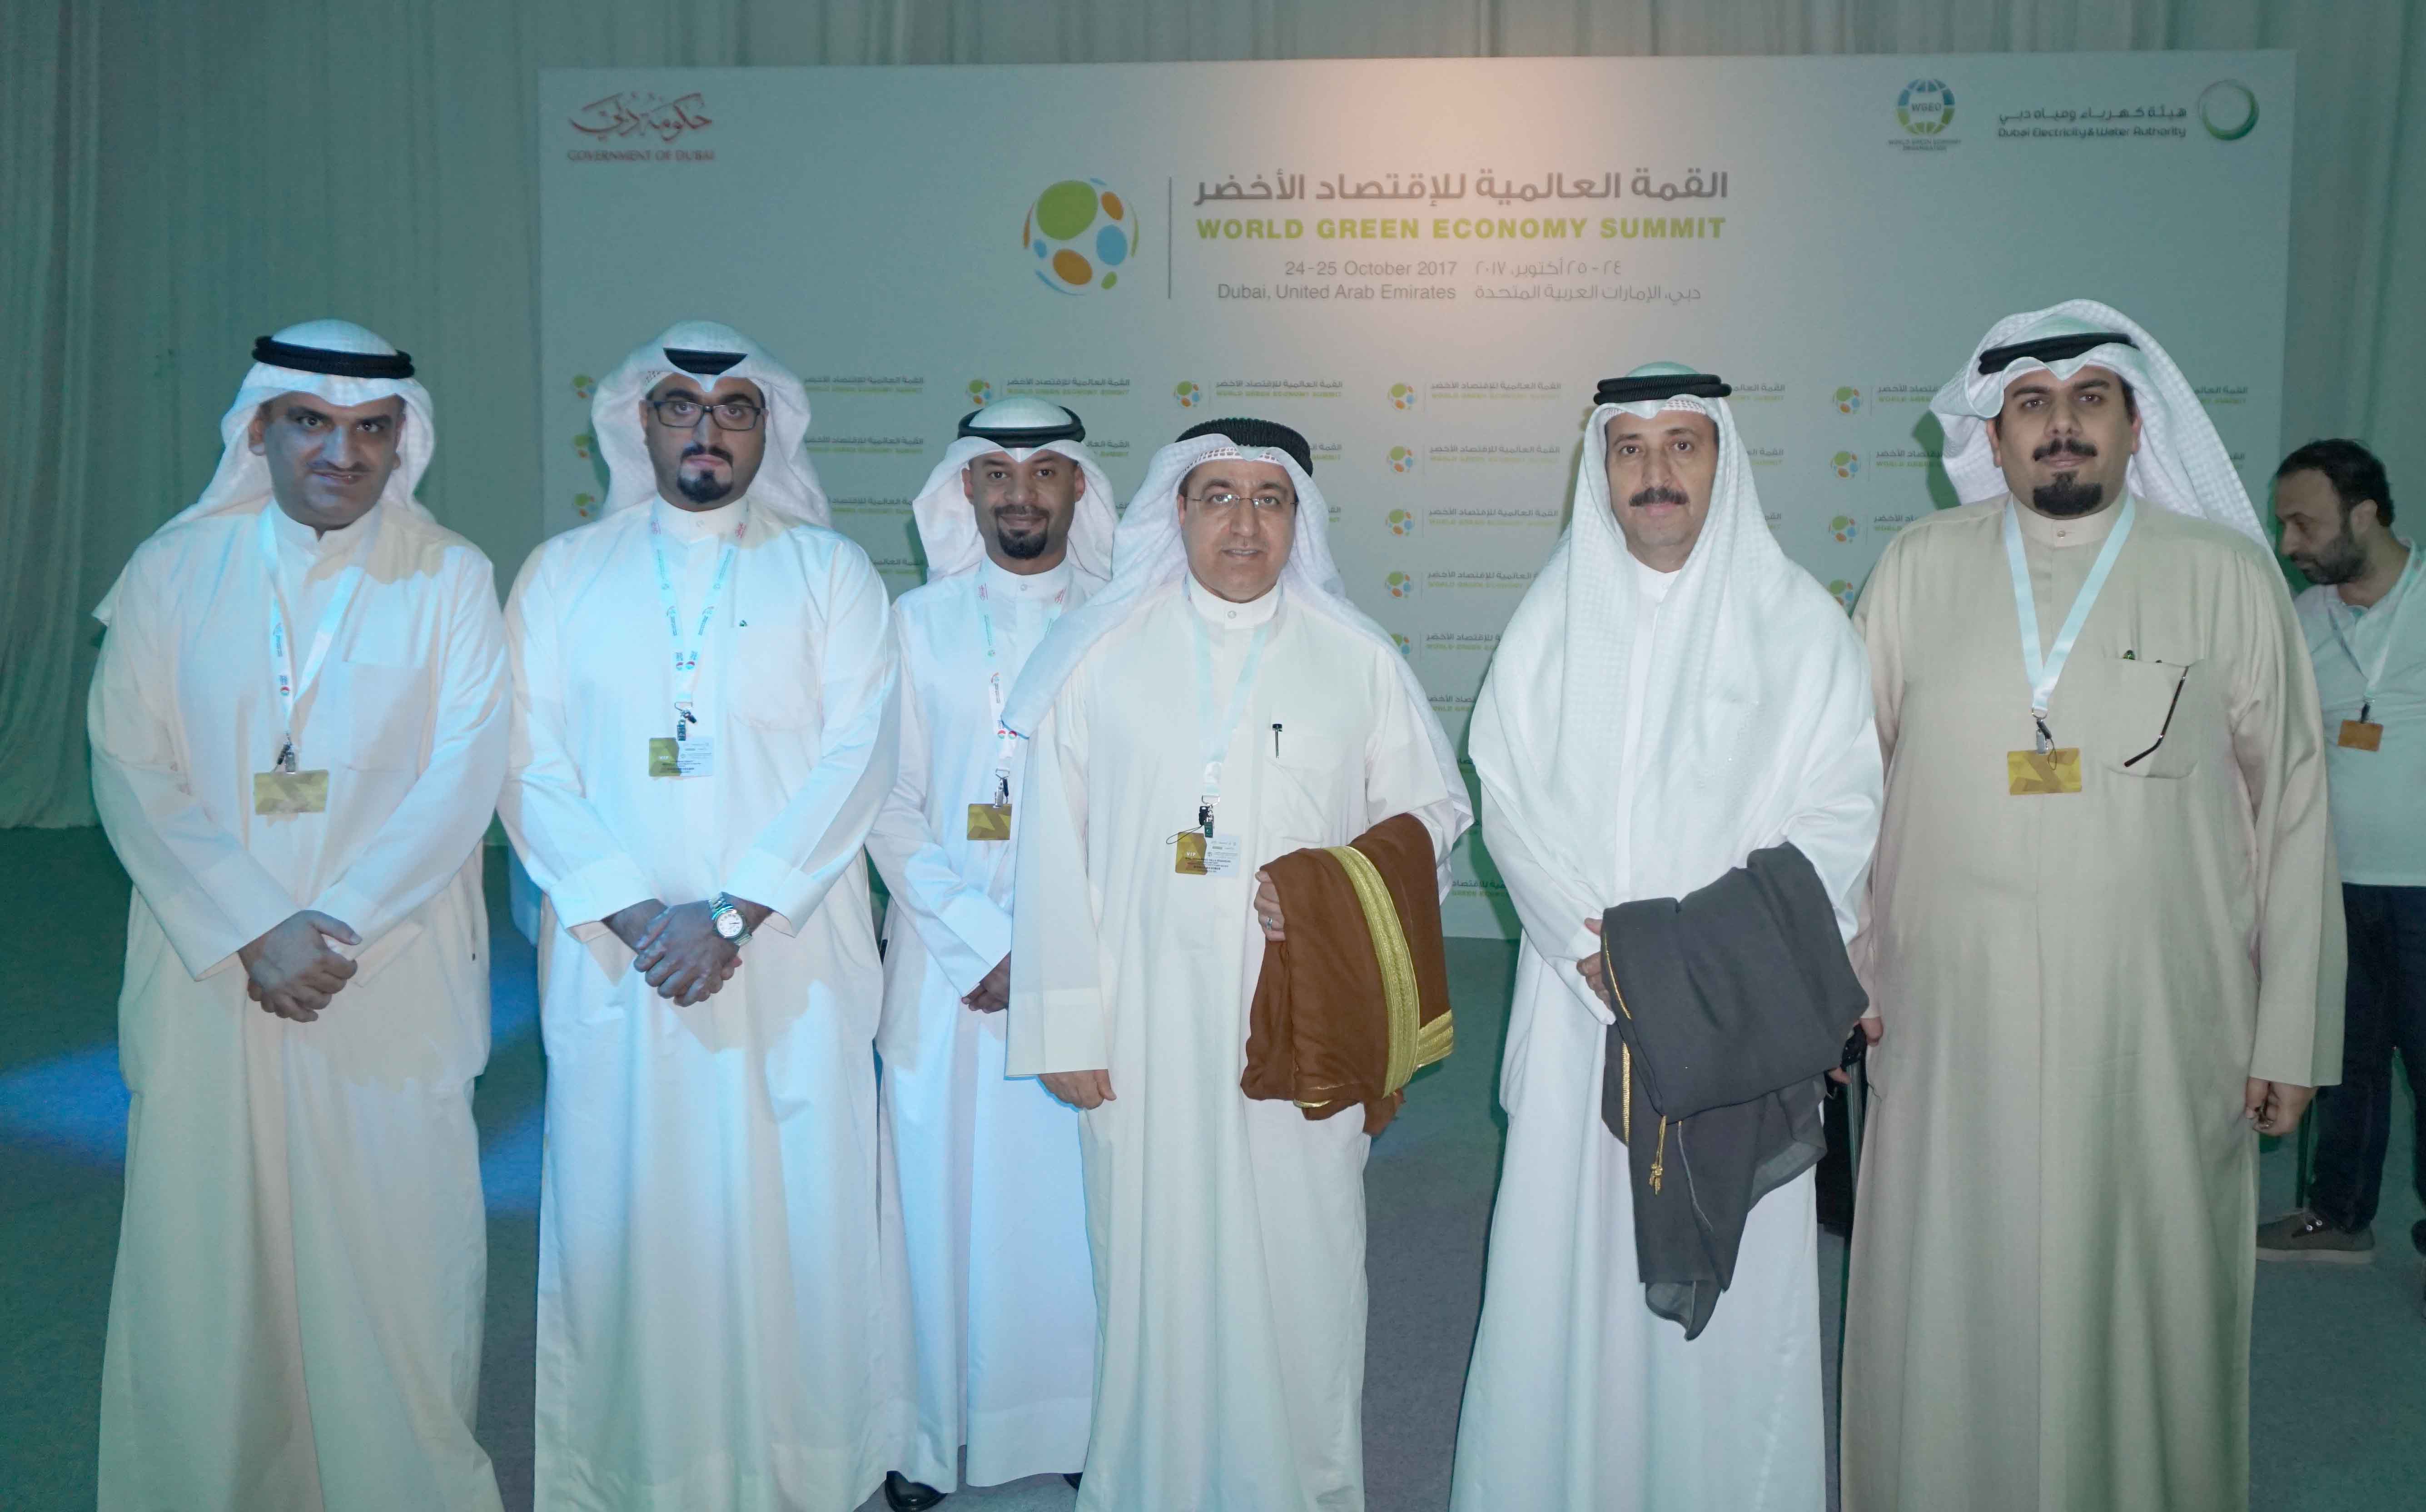 وكيل وزارة الكهرباء والماء الكويتي محمد بوشهري خلال مشاركته في (القمة العالمية للاقتصاد الأخضر)